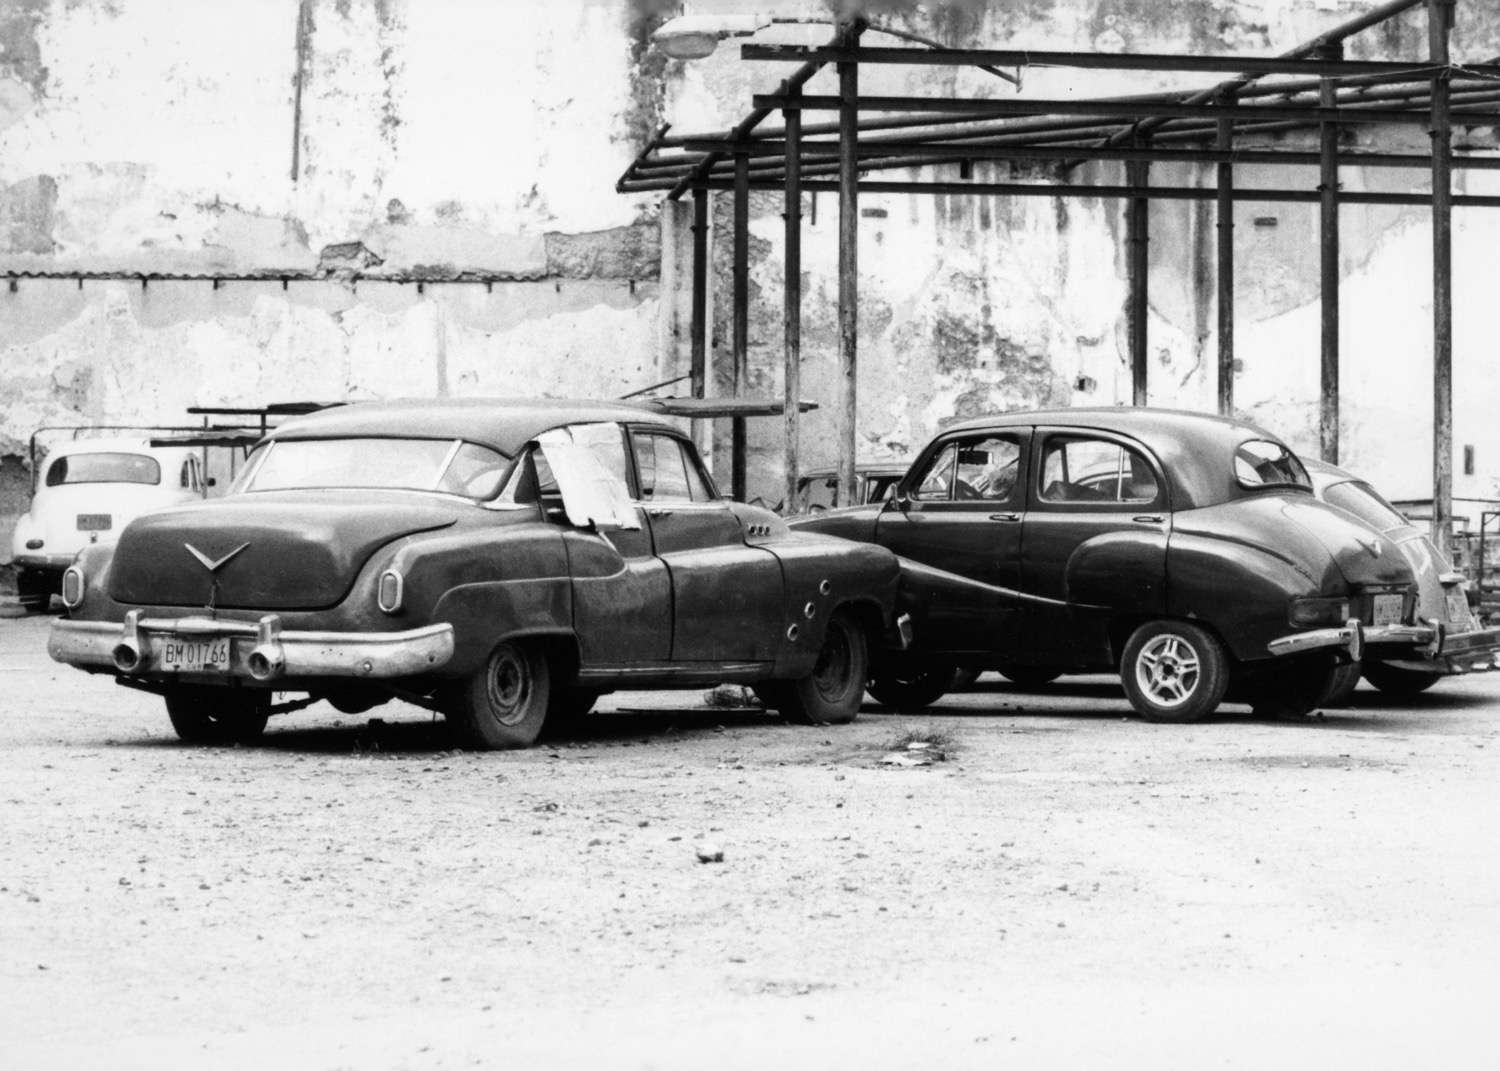 Cuba_old-cars-Cuba179.jpg